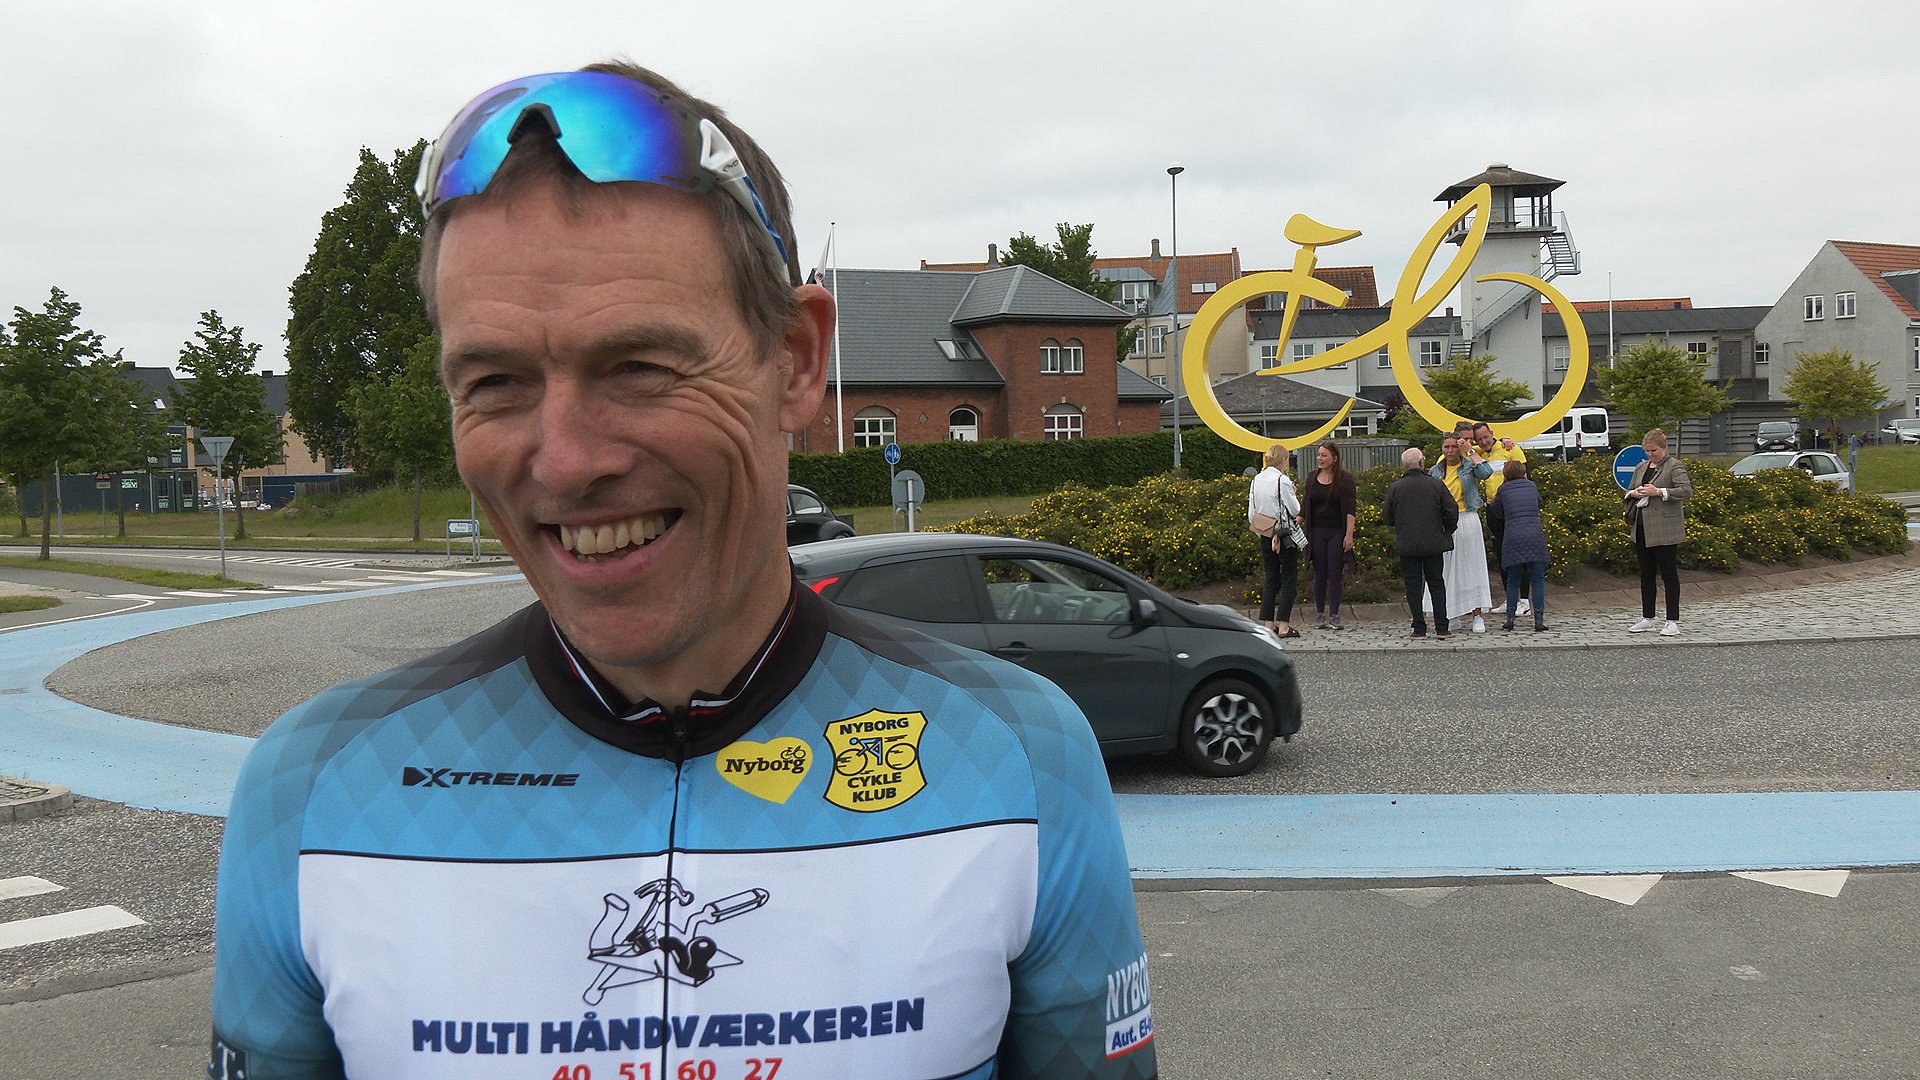 Stort Tour France-monument indviet: - Man vil tænke på, at der exceptionelt i Nyborg | TV2 Fyn